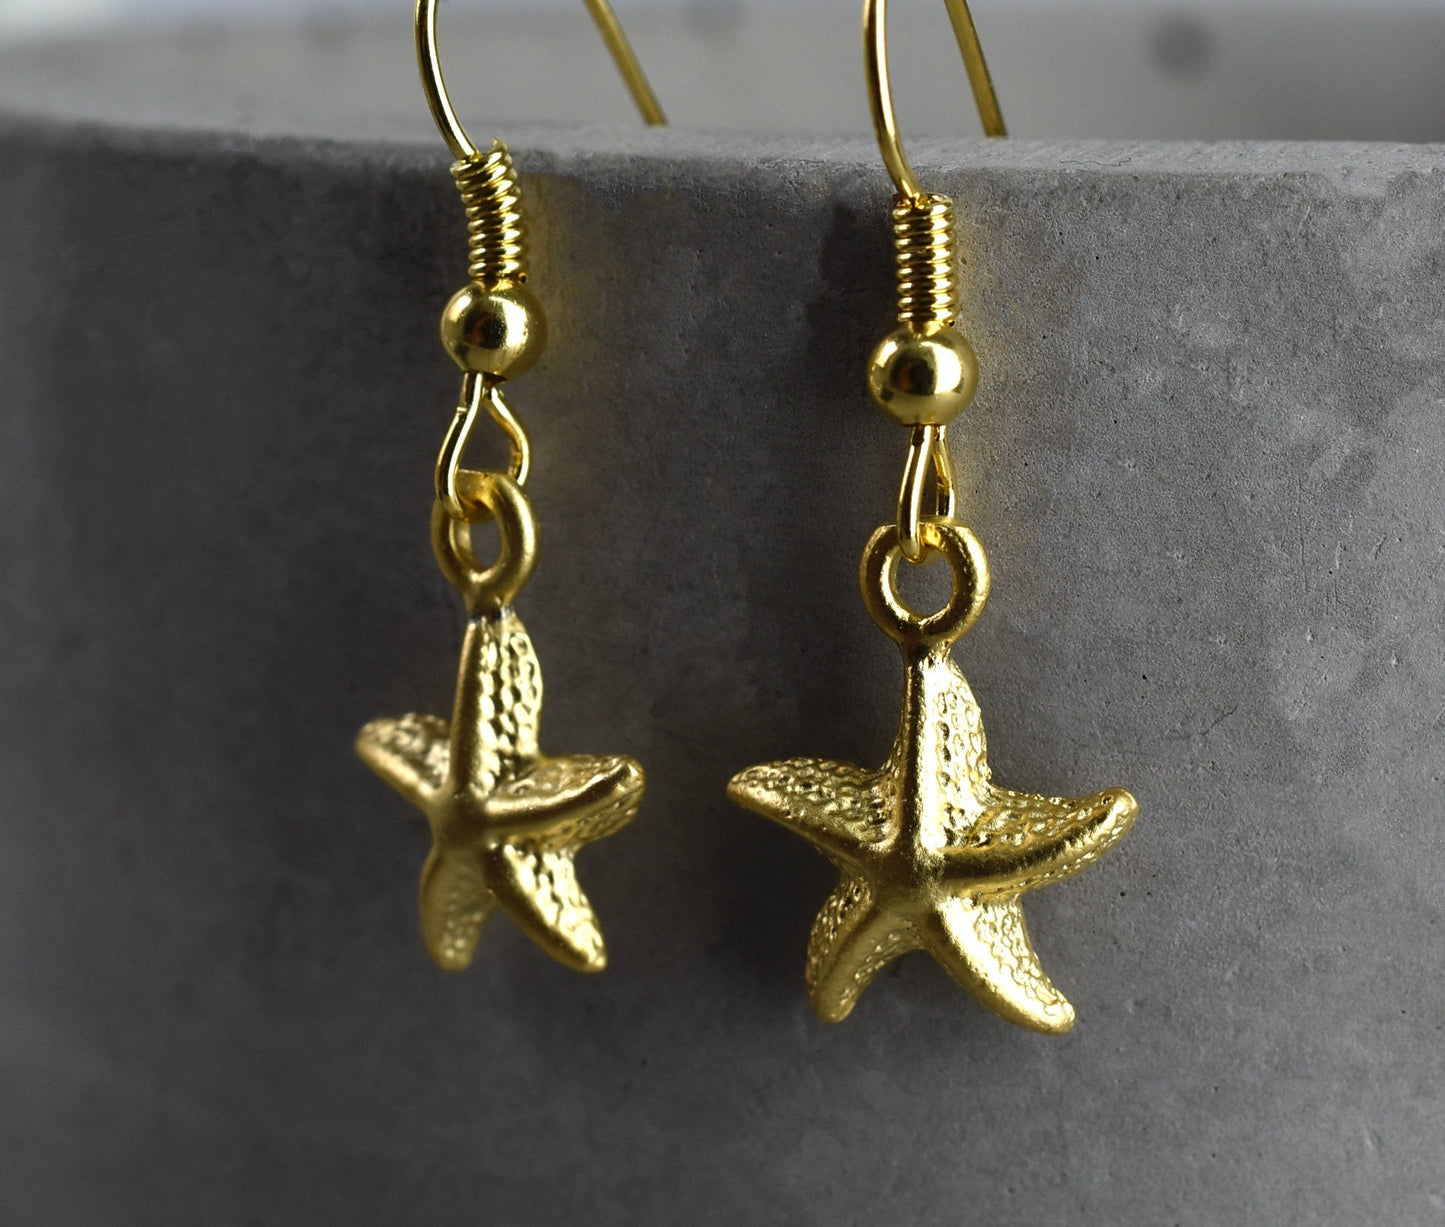 Boucles d'oreilles dorées "Starfish" - VinoHR-82